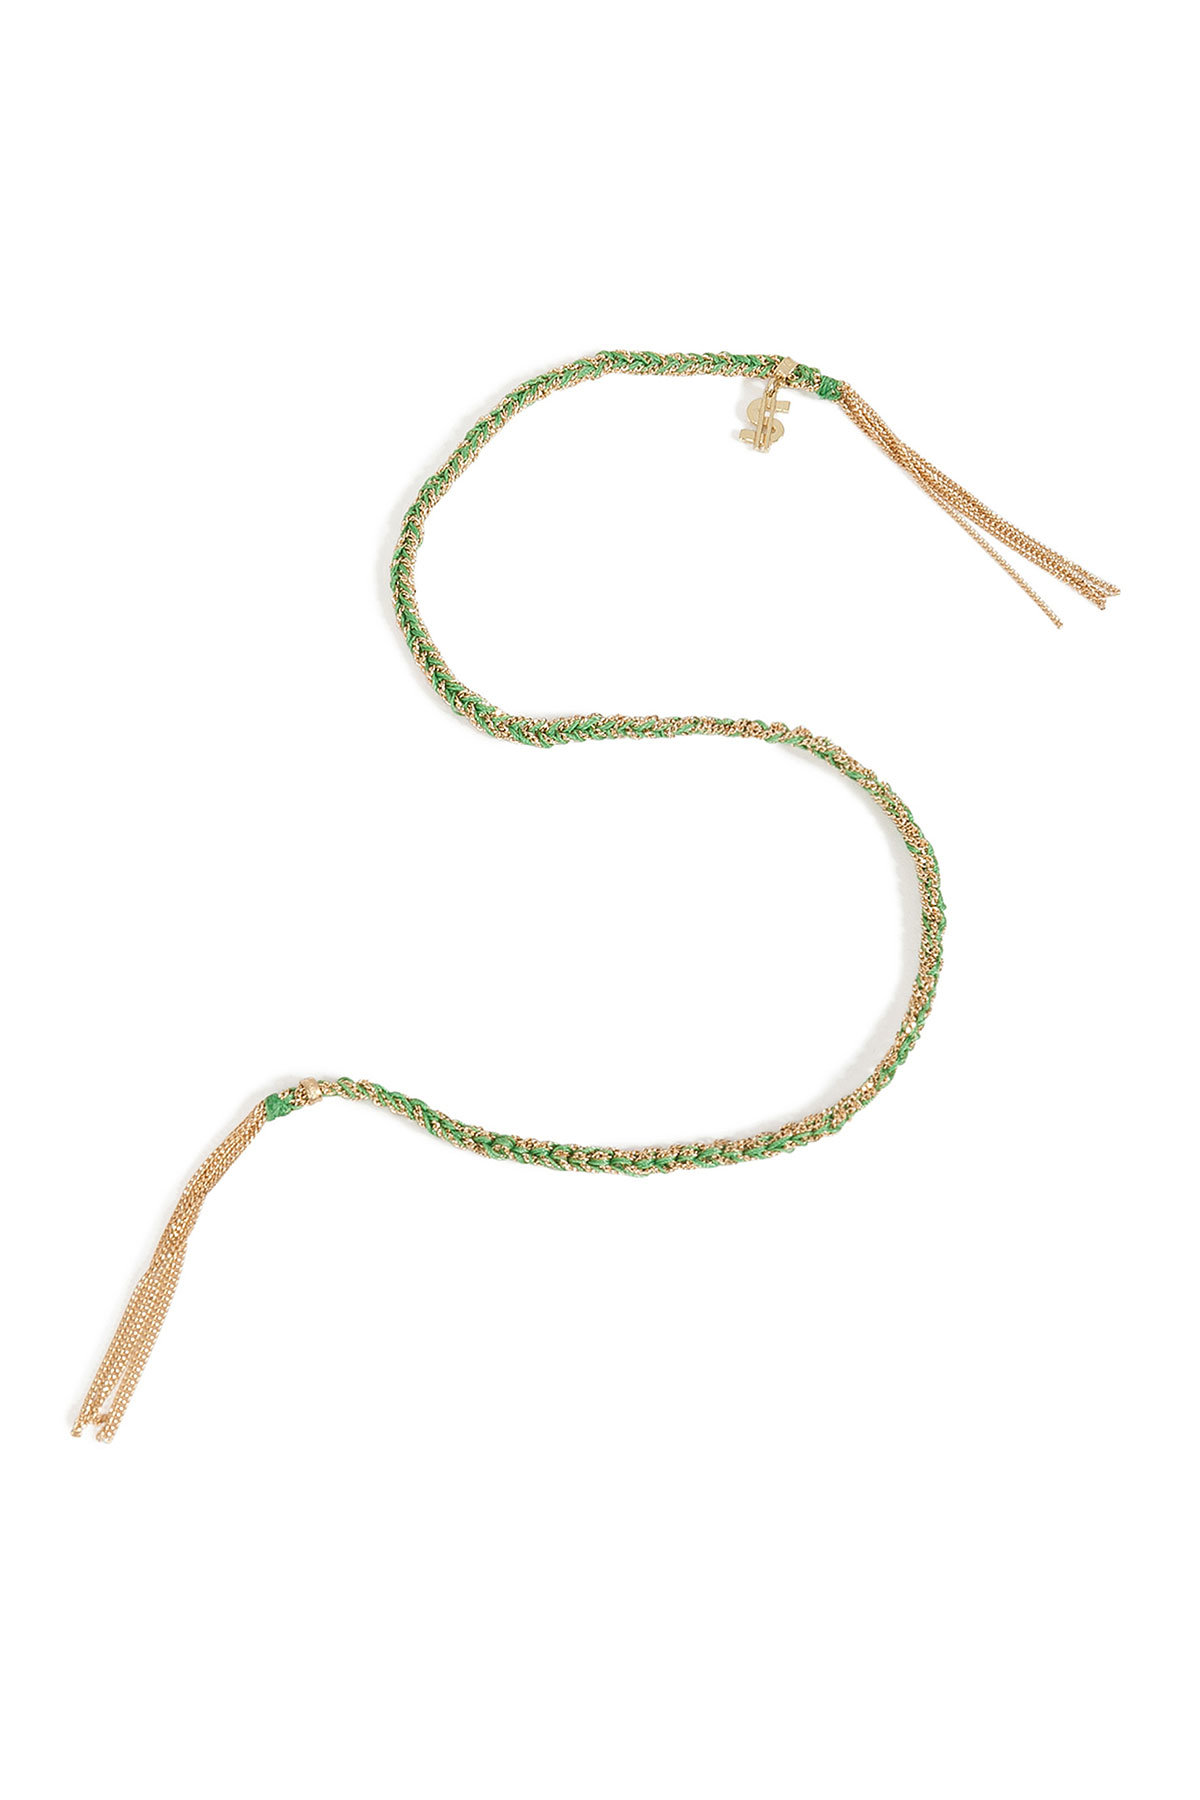 Carolina Bucci - 18K Gold/Silk Woven Tassel Bracelet in Green